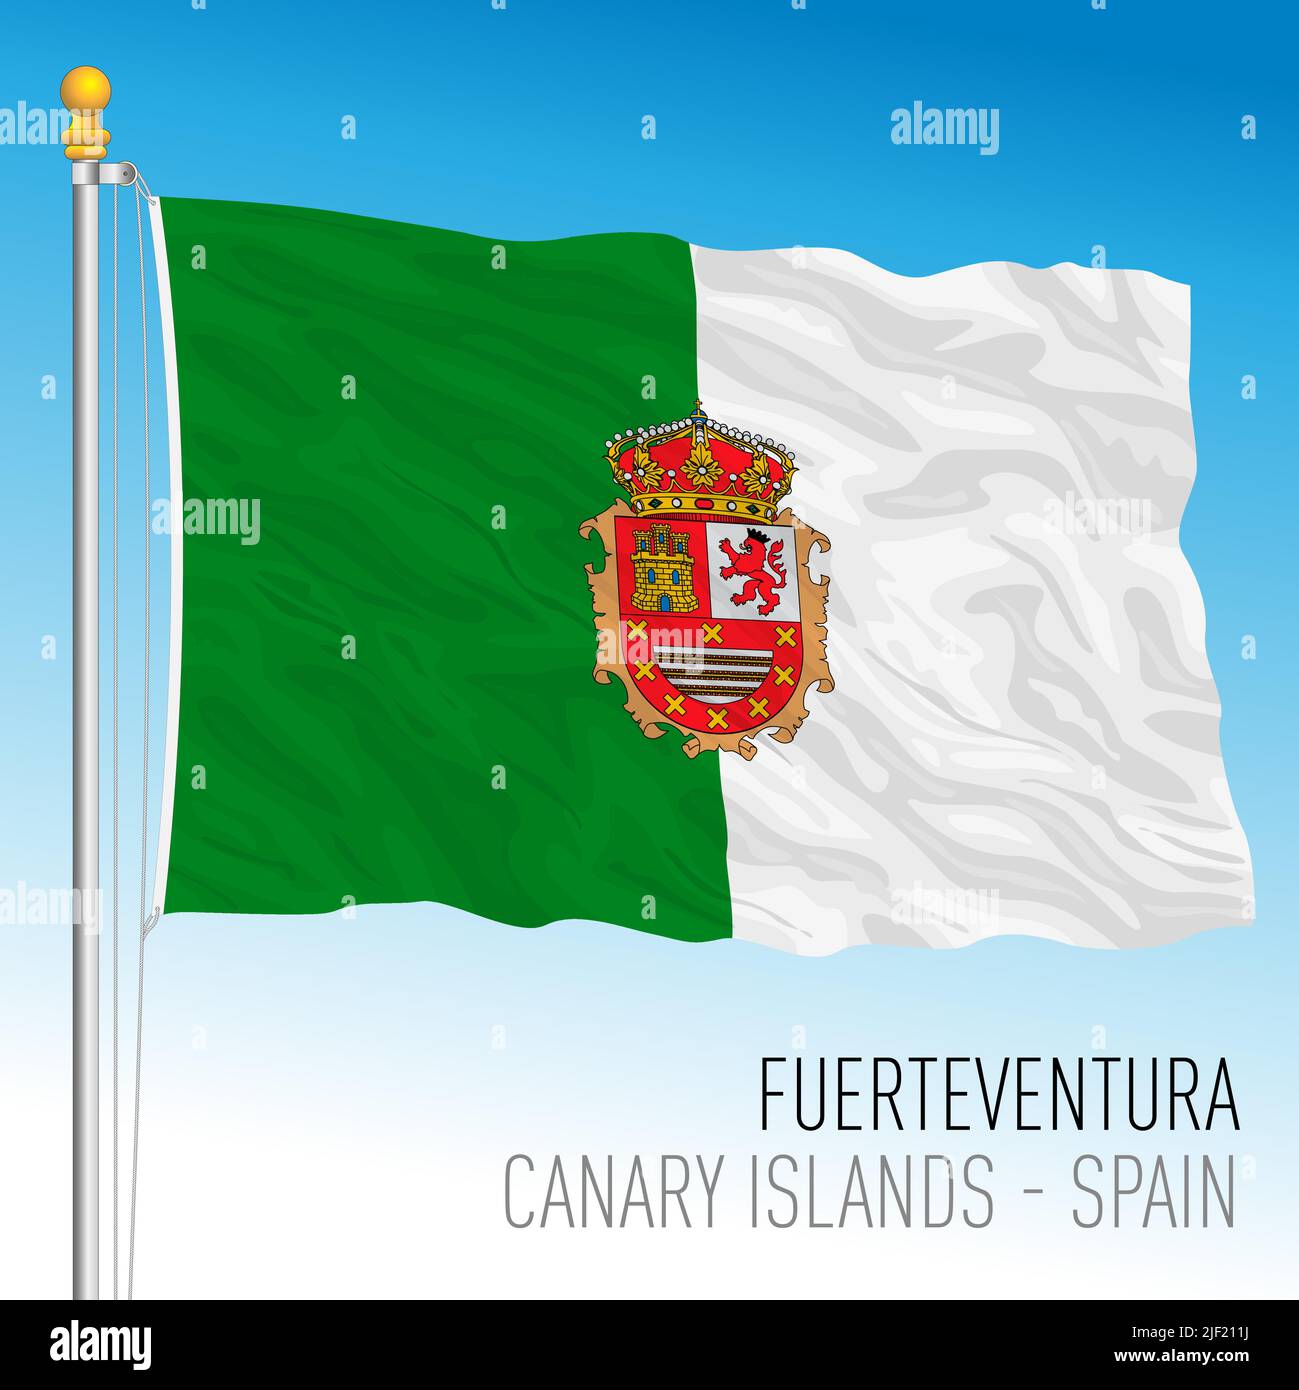 Drapeau de l'île de Fuerteventura, îles Canaries, Espagne, illustration vectorielle Illustration de Vecteur